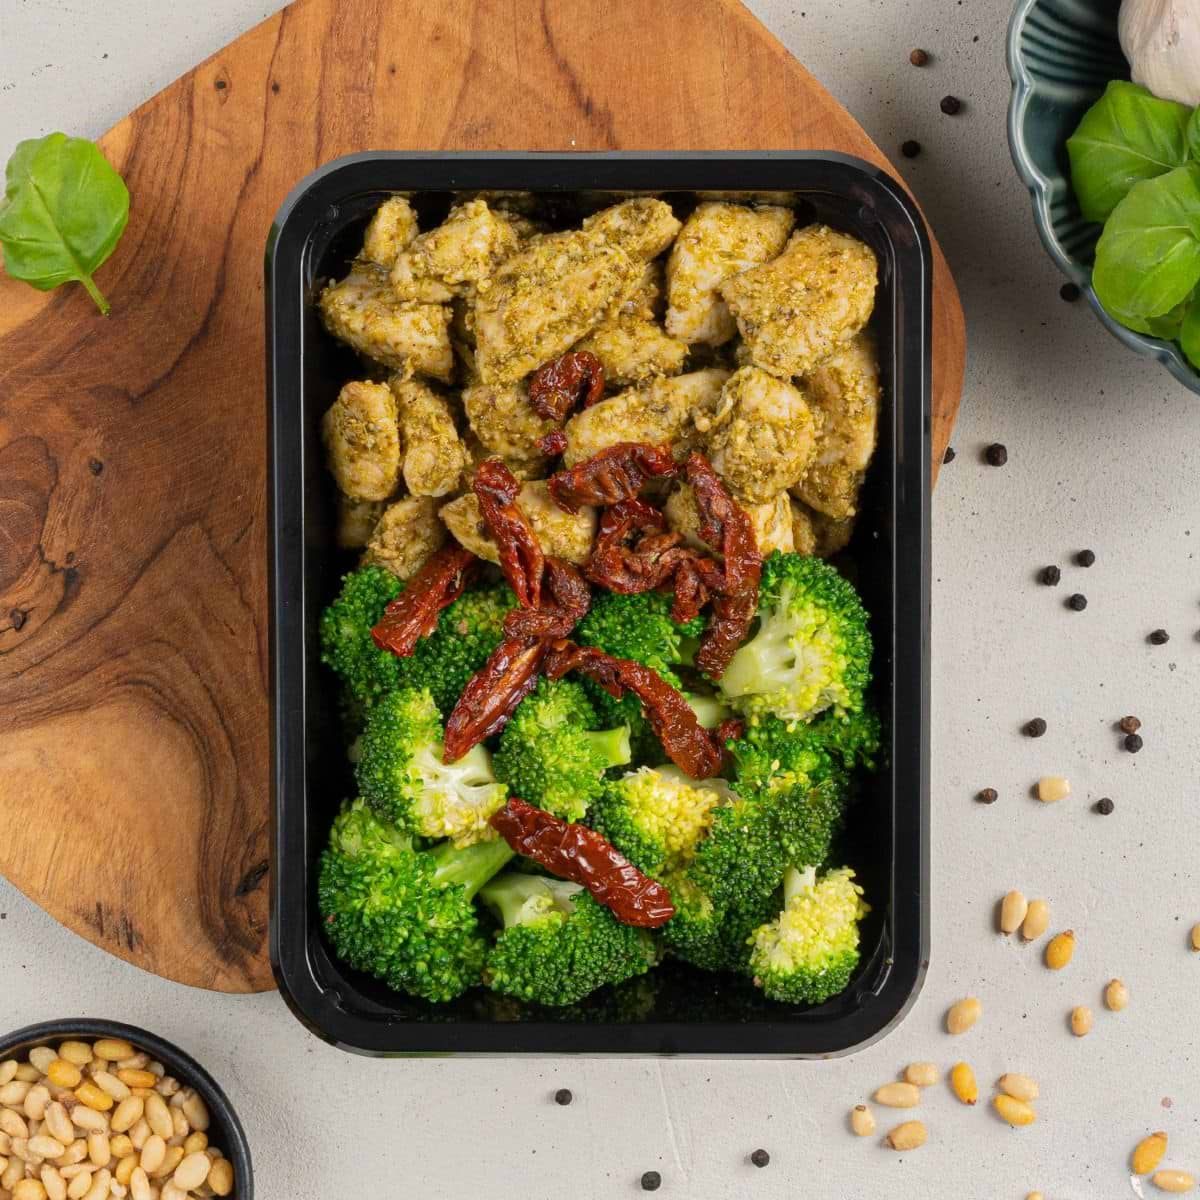 Afvallen - Kip Pesto - Broccoli - Muscle Meal Prep sportmaaltijden